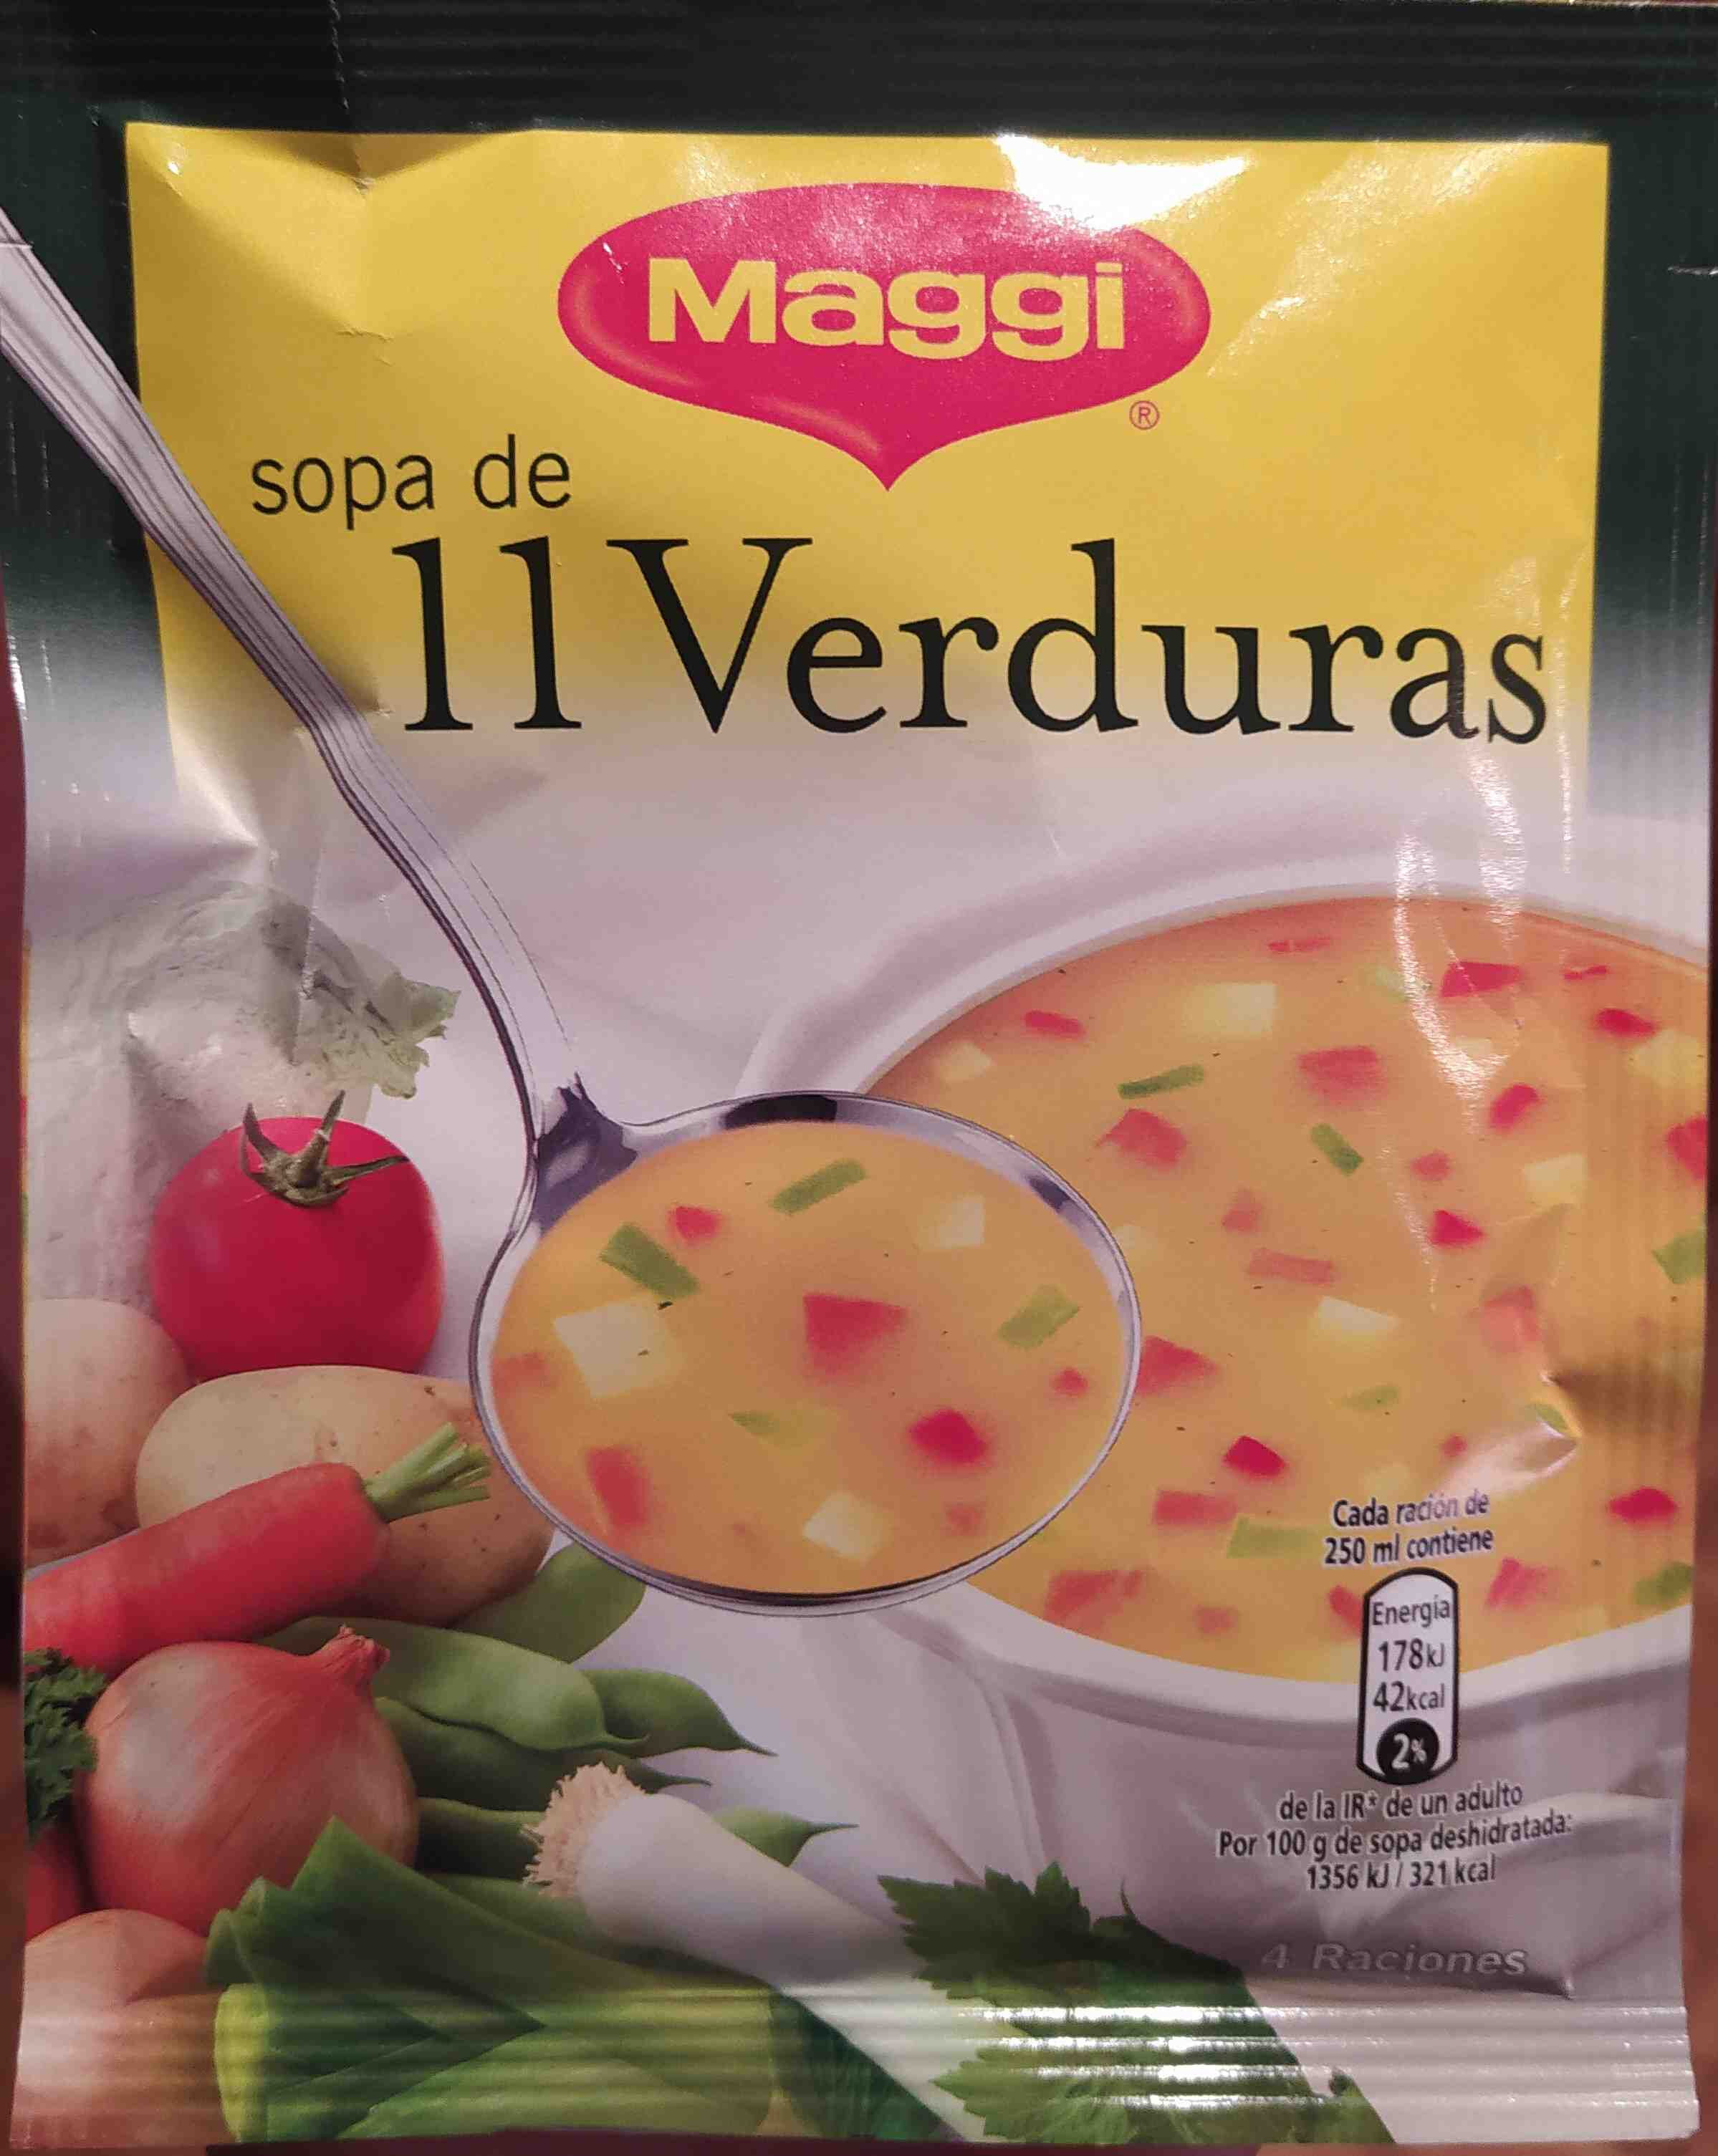 Sopa de 11 verduras Maggi - Producto - en